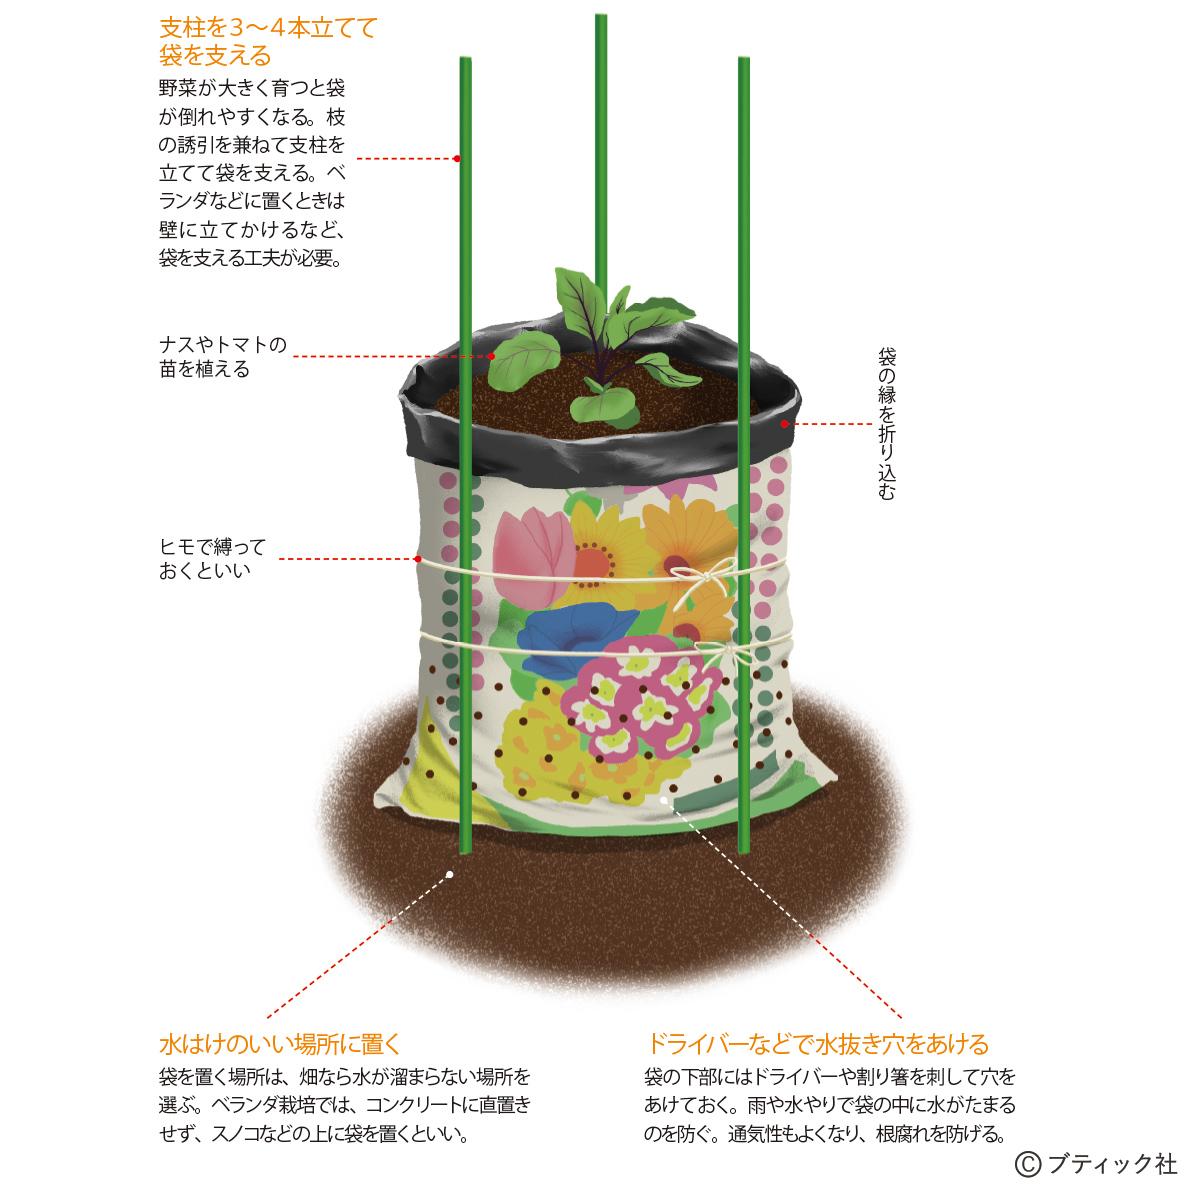 野菜作りのアイデア 培養土の袋栽培 やり方と実例 ぬくもり